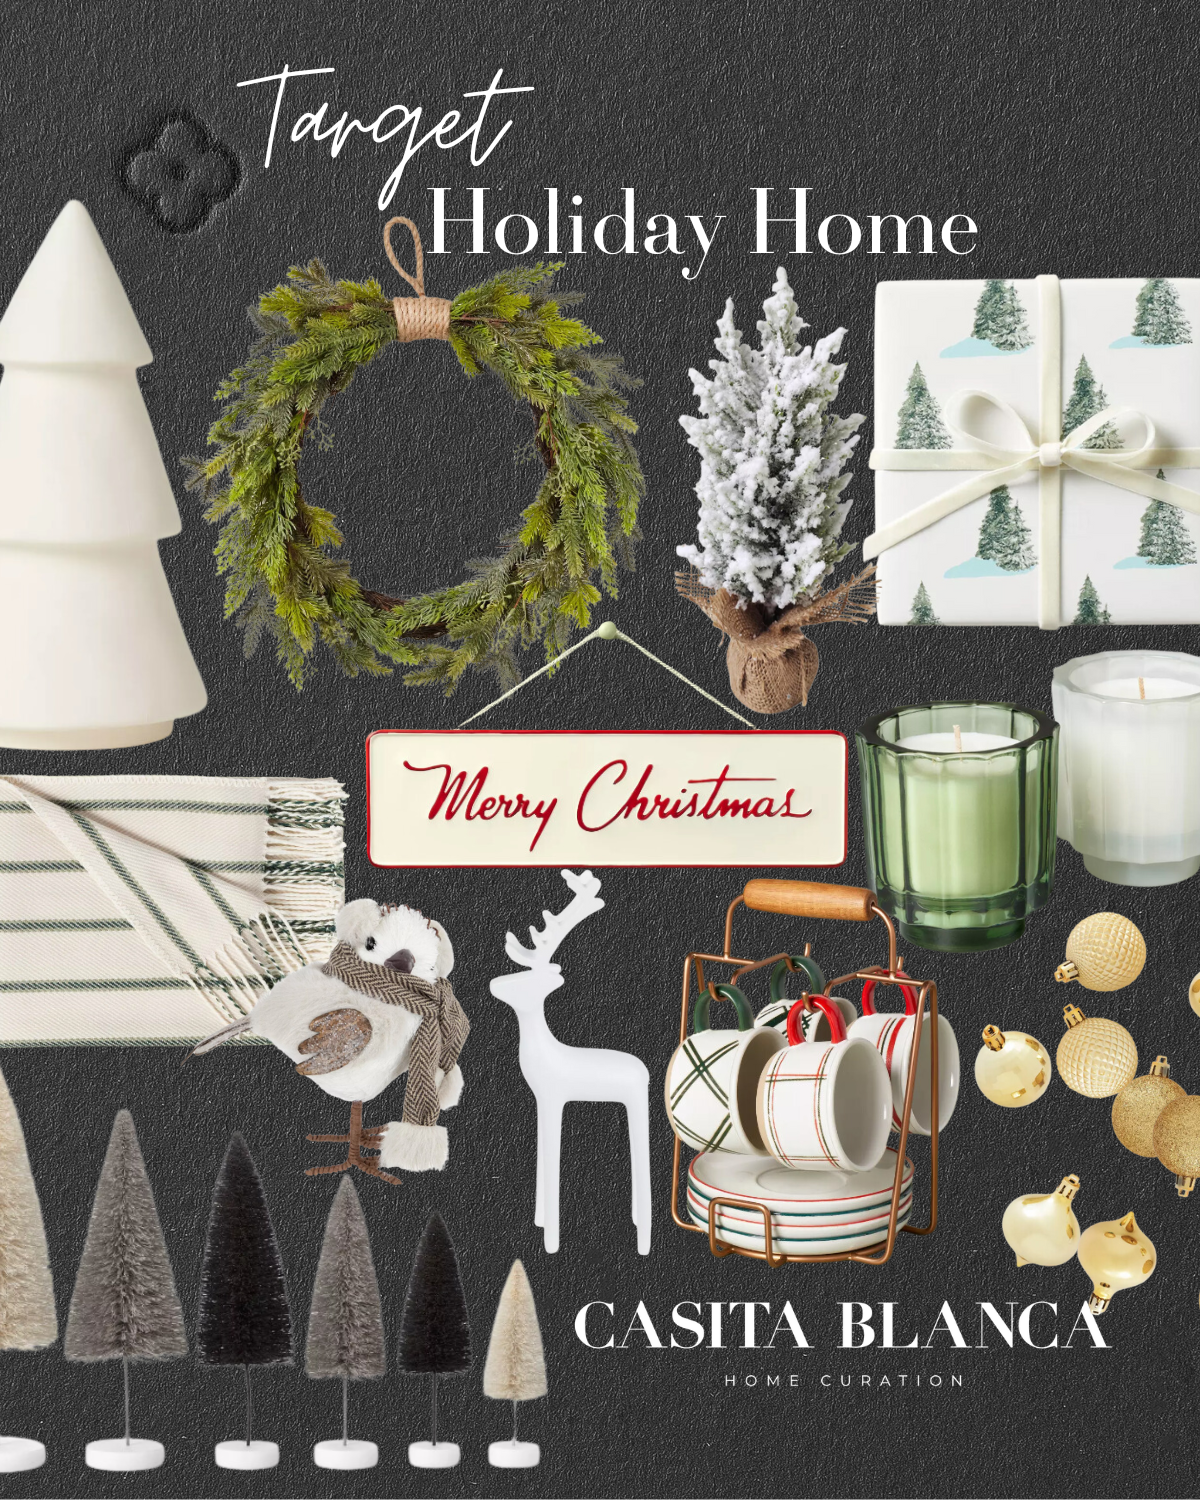 holiday home accents | #holiday #home #accents #holidayhome #christmas #christmasdecor #holidaydecor #wreath #christmastree #blanket #reindeer